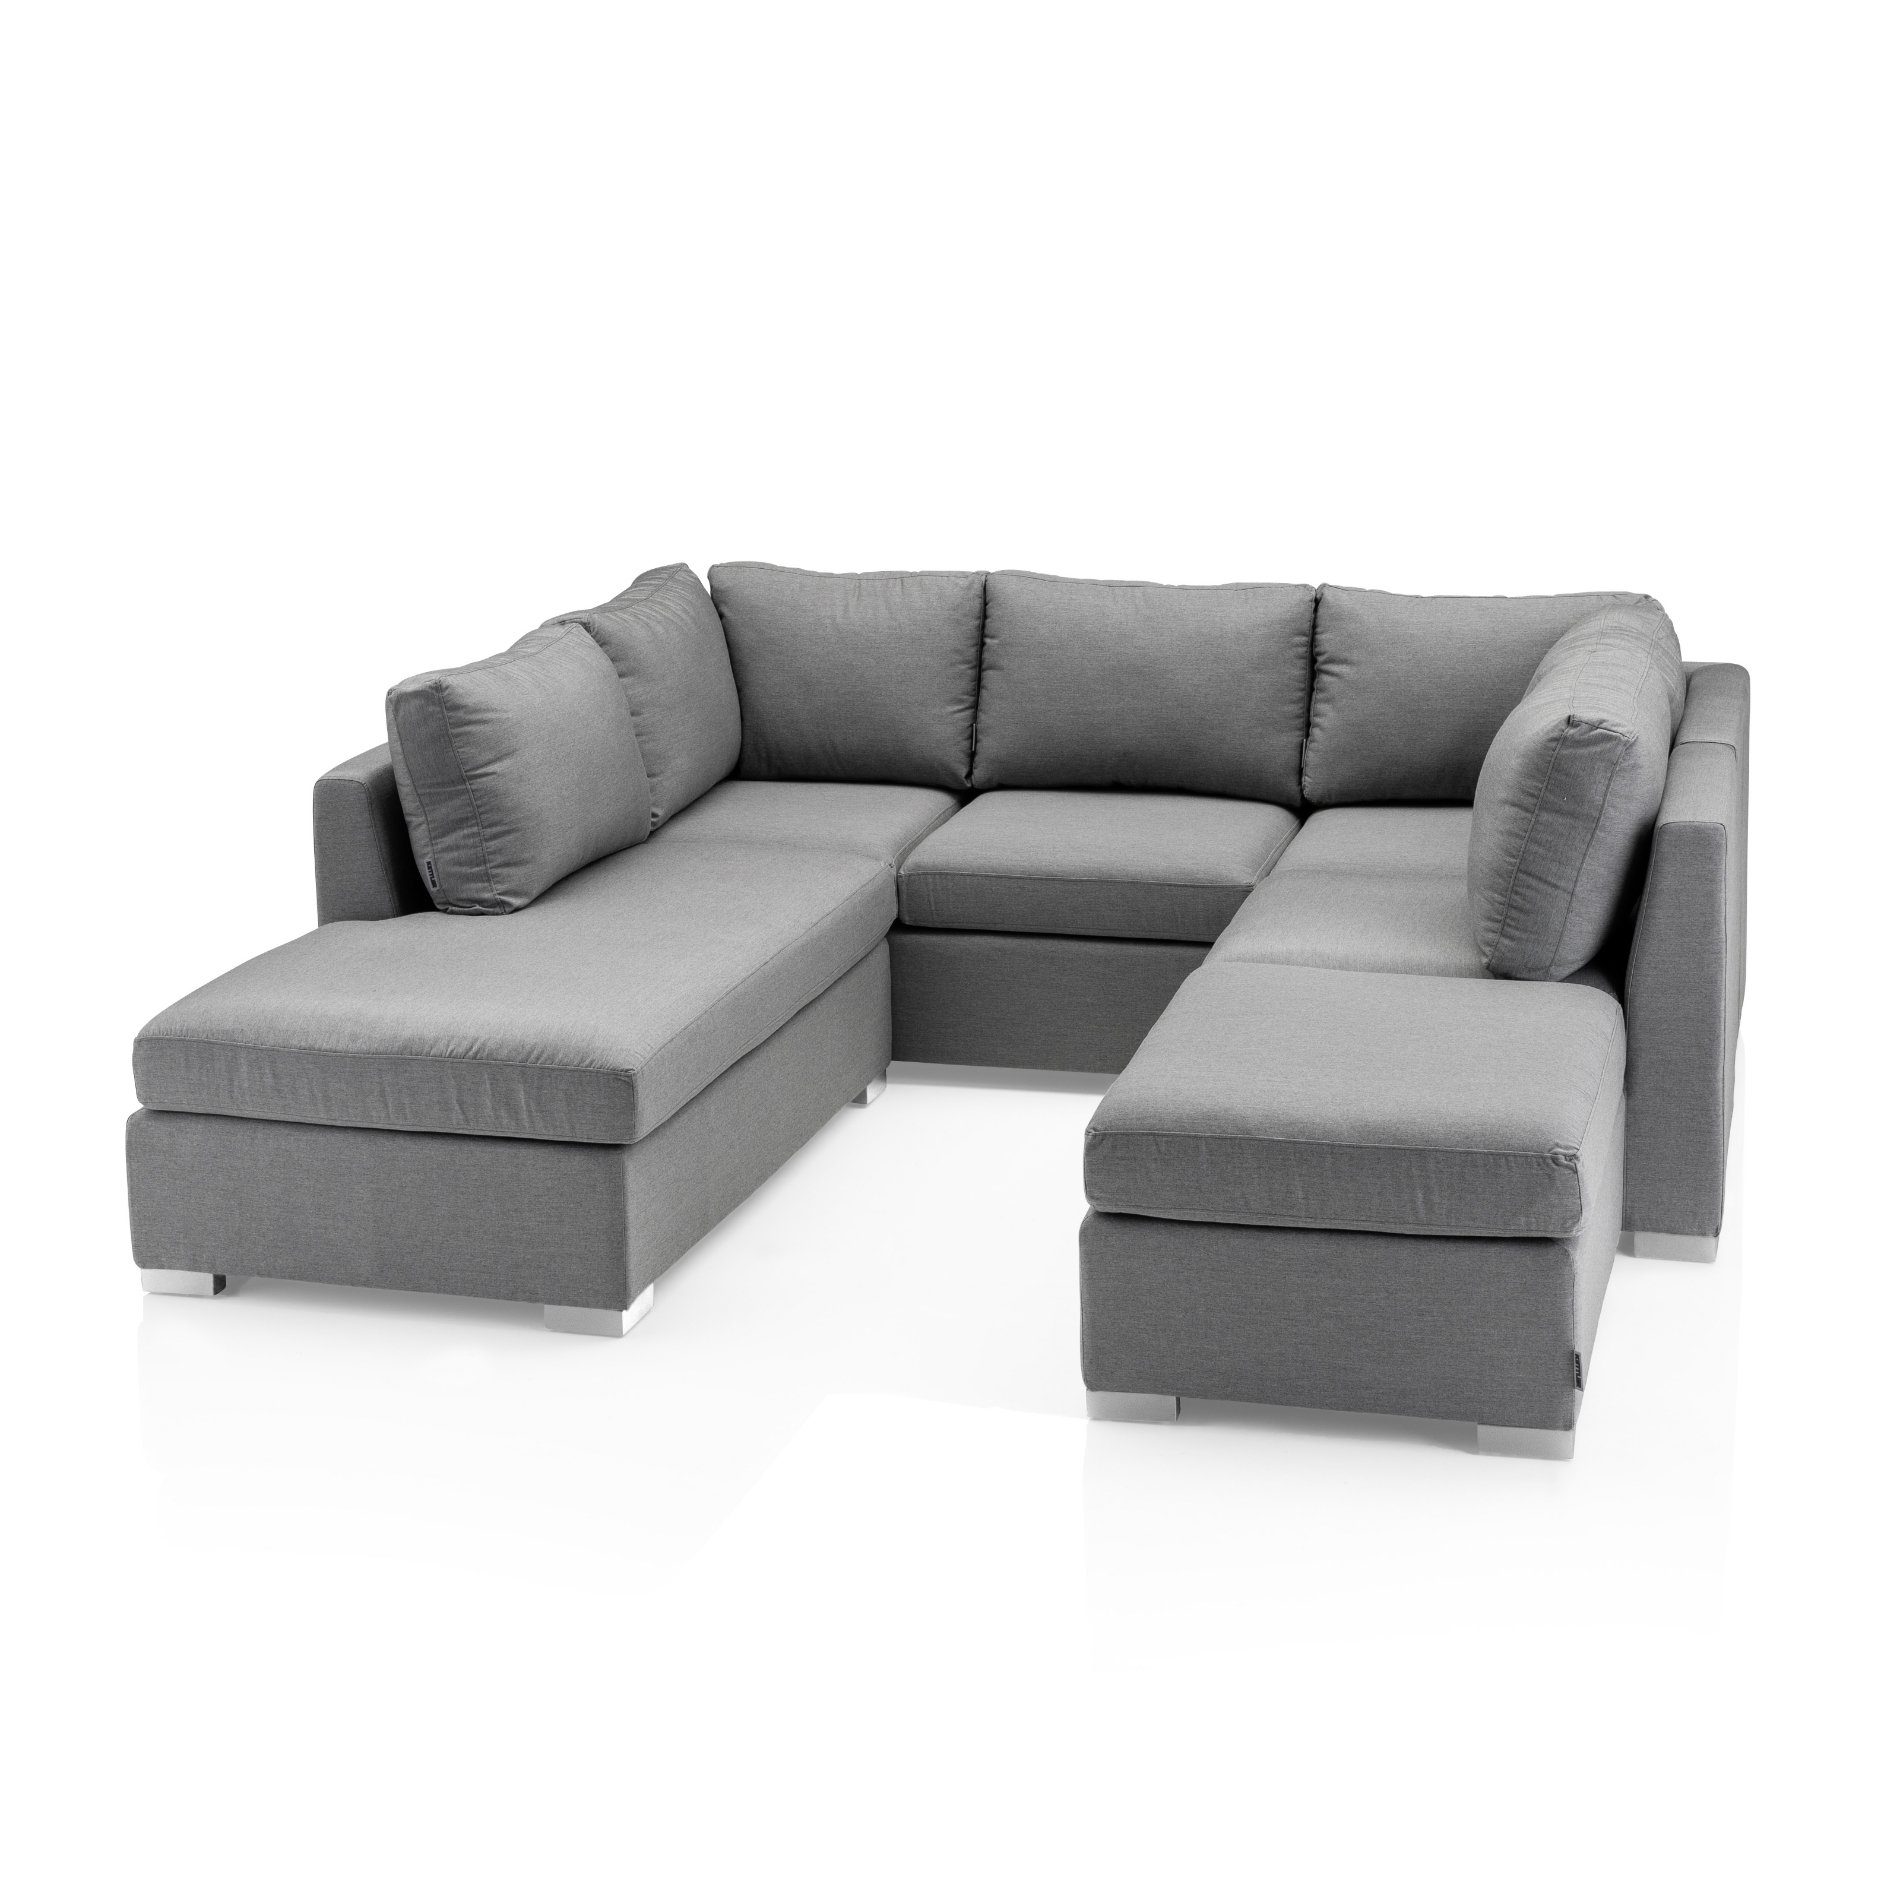 Kettler "Lavi" Loungeset, bestehend aus 3-Sitzer Sofa, Chaiselongue, Mittelteil und Hocker